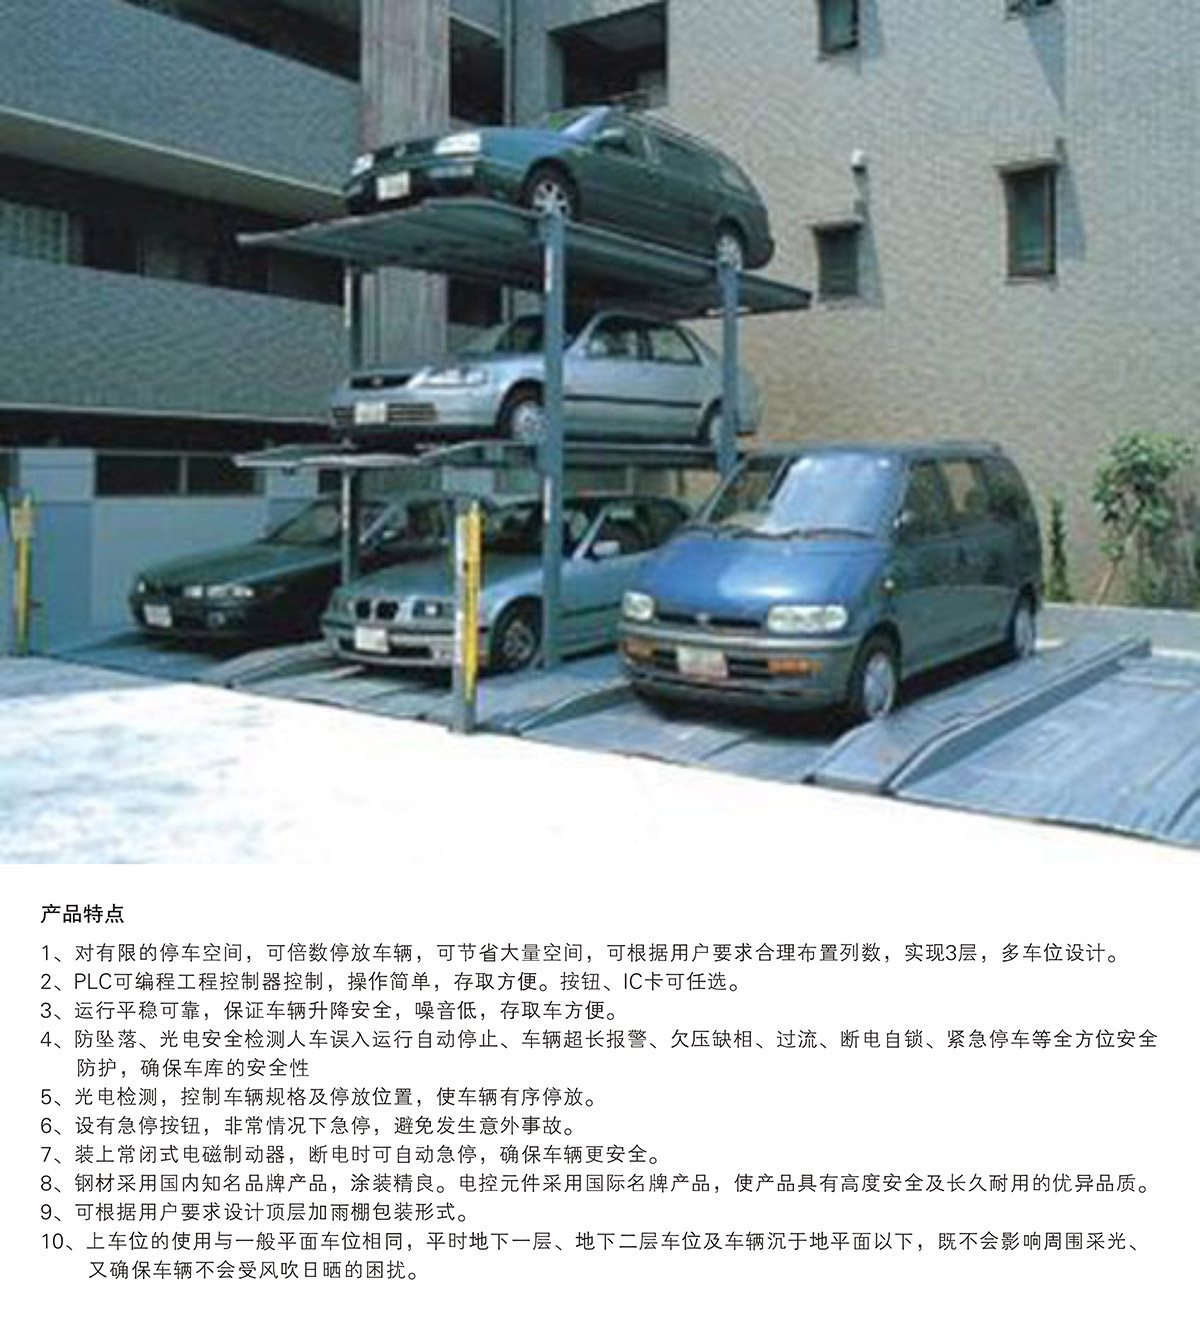 机械立体车位PJS3D2三层地坑简易升降立体停车产品特点.jpg